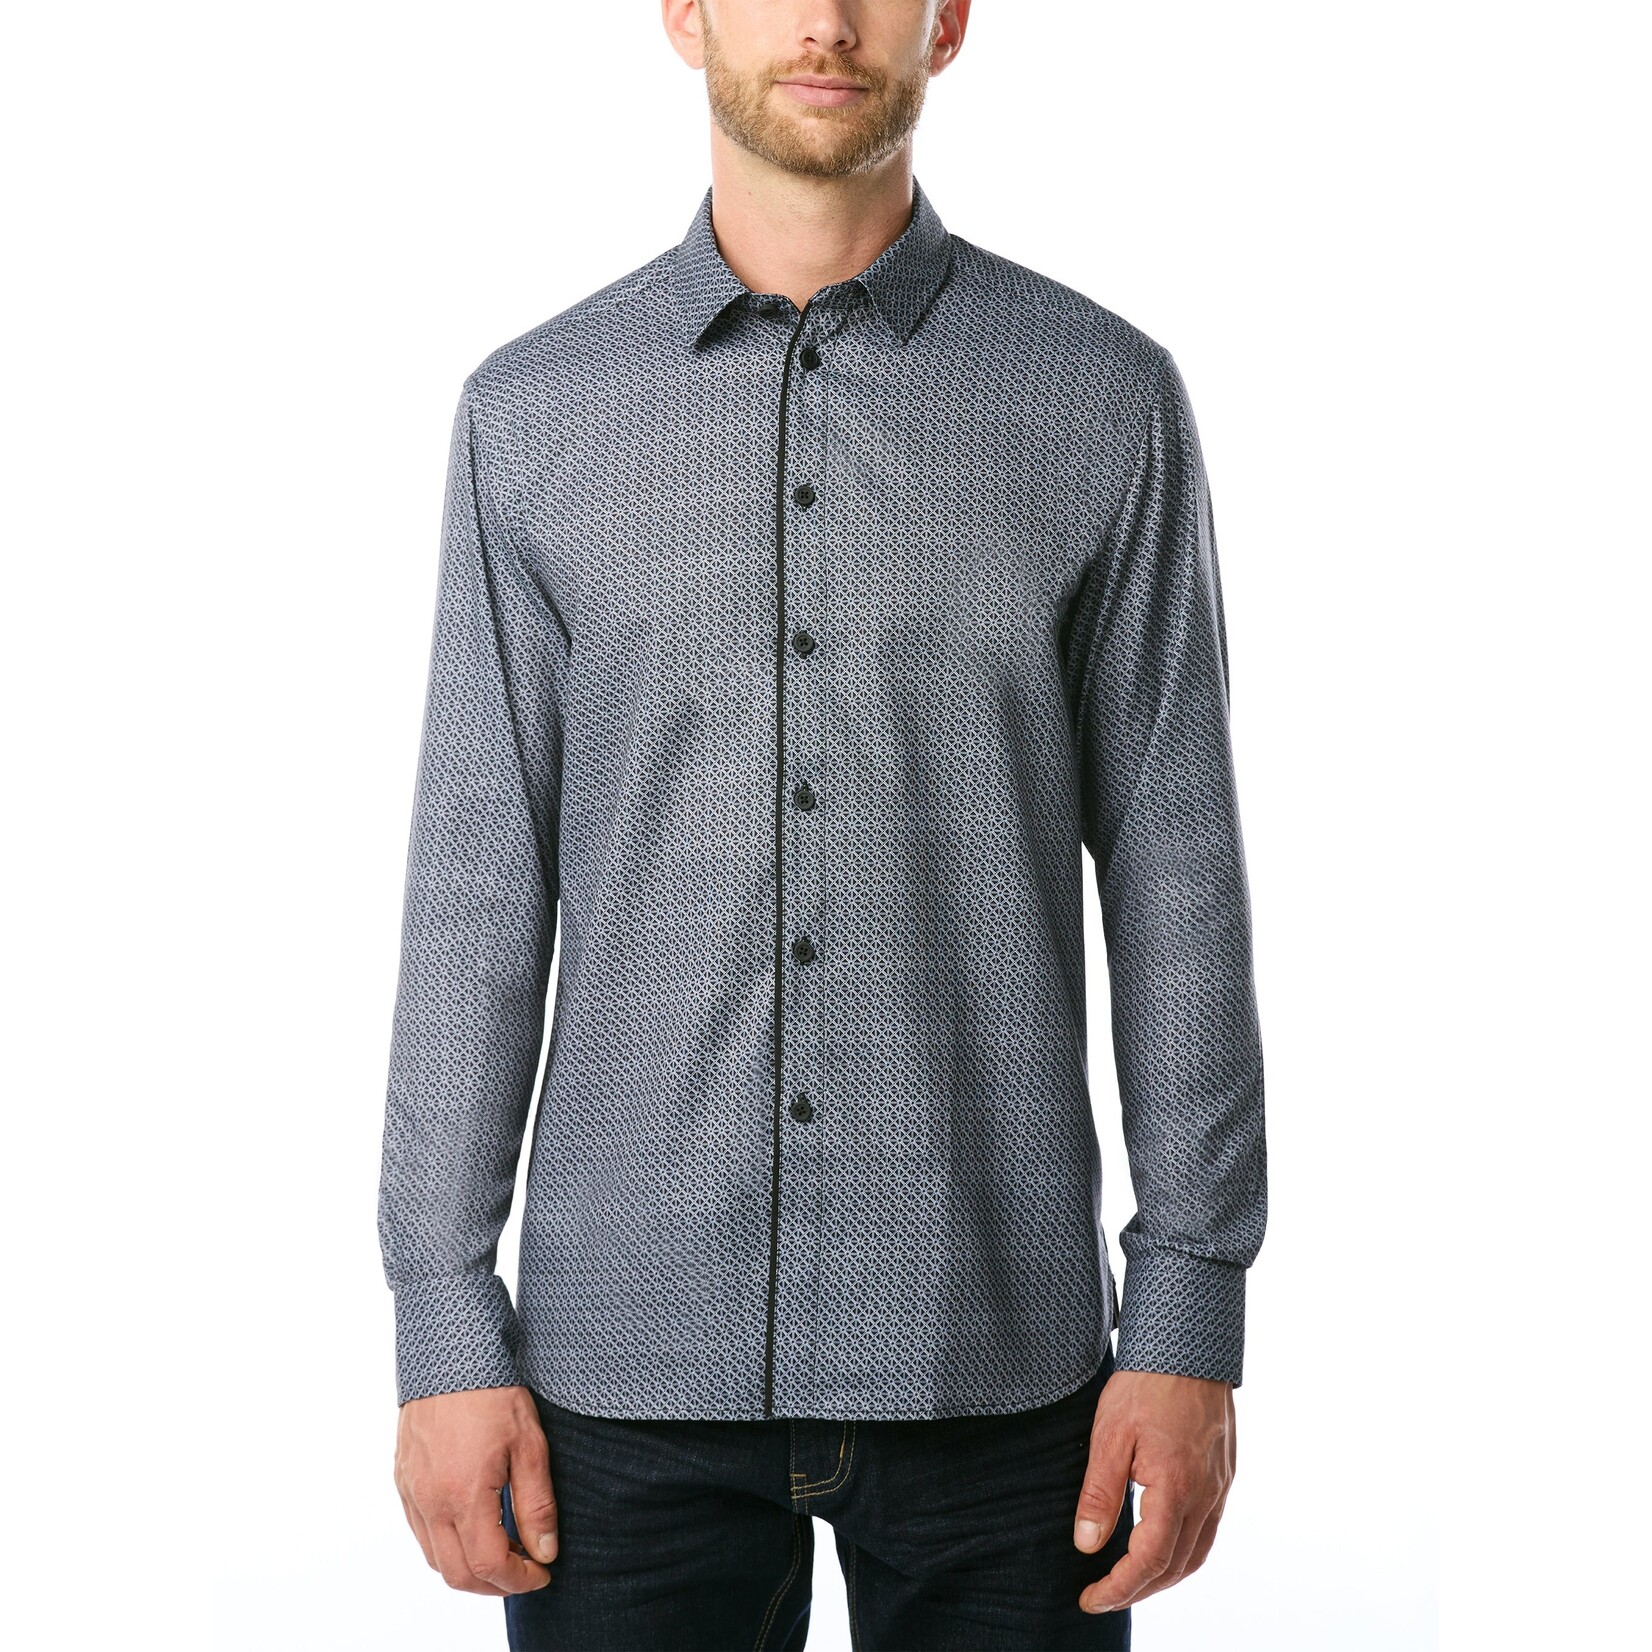 Vincent D'Amerique Vincent D'Amerique mens long sleeve print stretch button shirt, shirts, top, tops